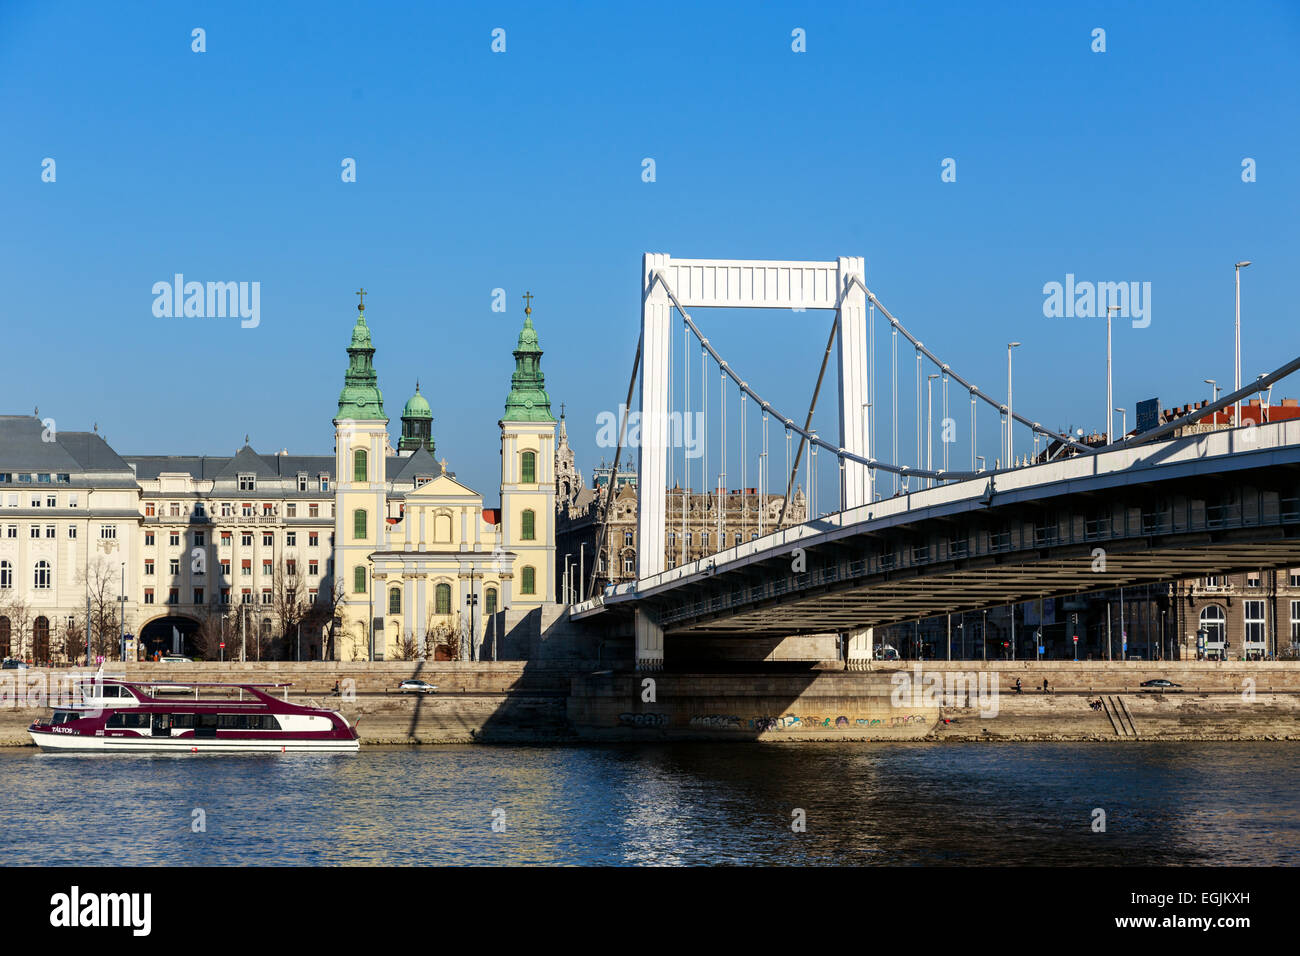 BUDAPEST, HUNGARY - Februar 15, 2015: Elisabeth Bridge (Hungarian: Erzsebet hid) is the third newest bridge of Budapest, Hungary Stock Photo